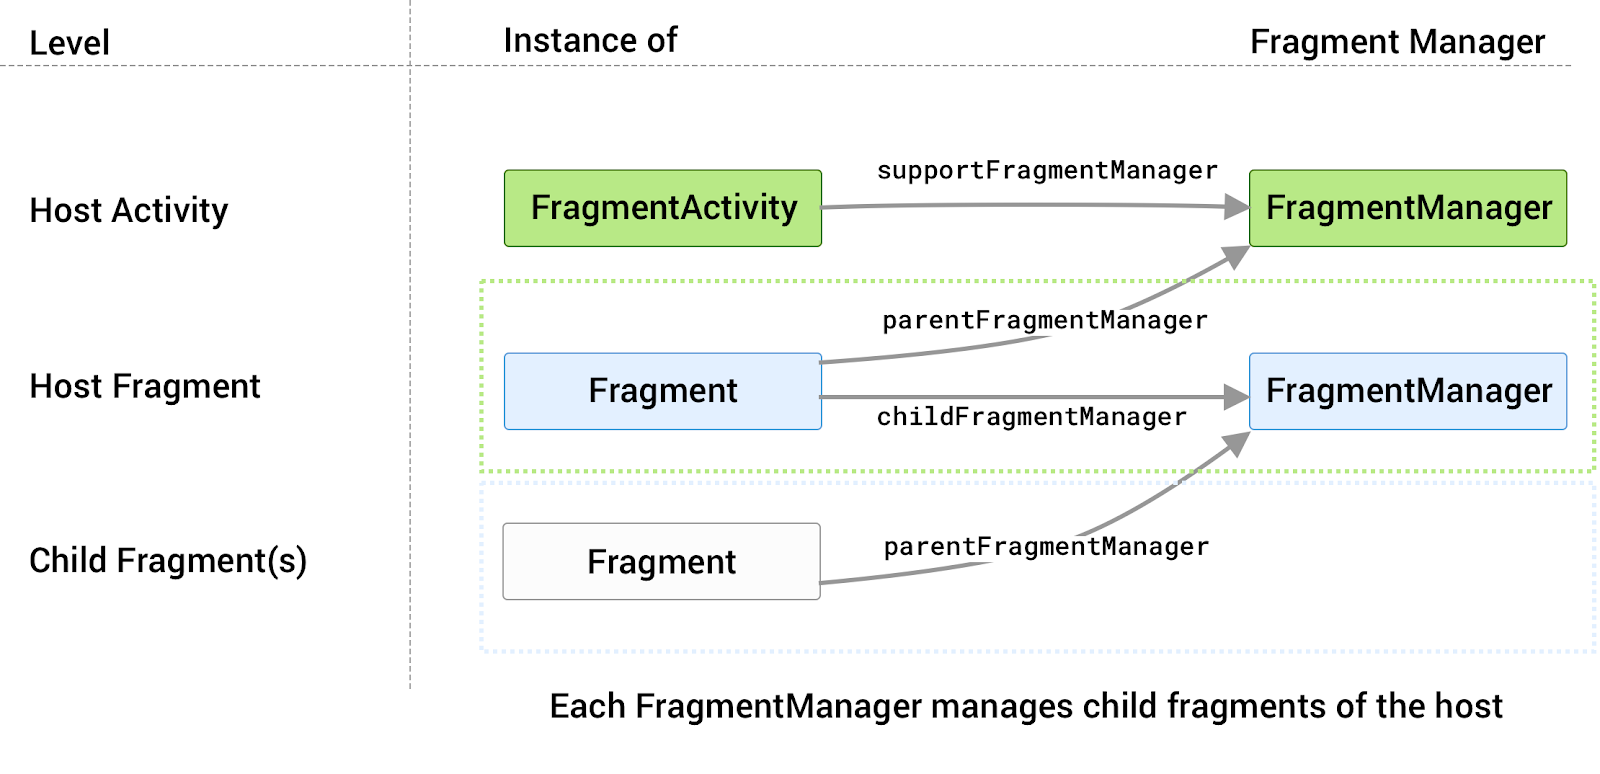 يكون لكل مضيف مدير FragmentManager الخاص به مرتبط به
            لإدارة الأجزاء الفرعية.